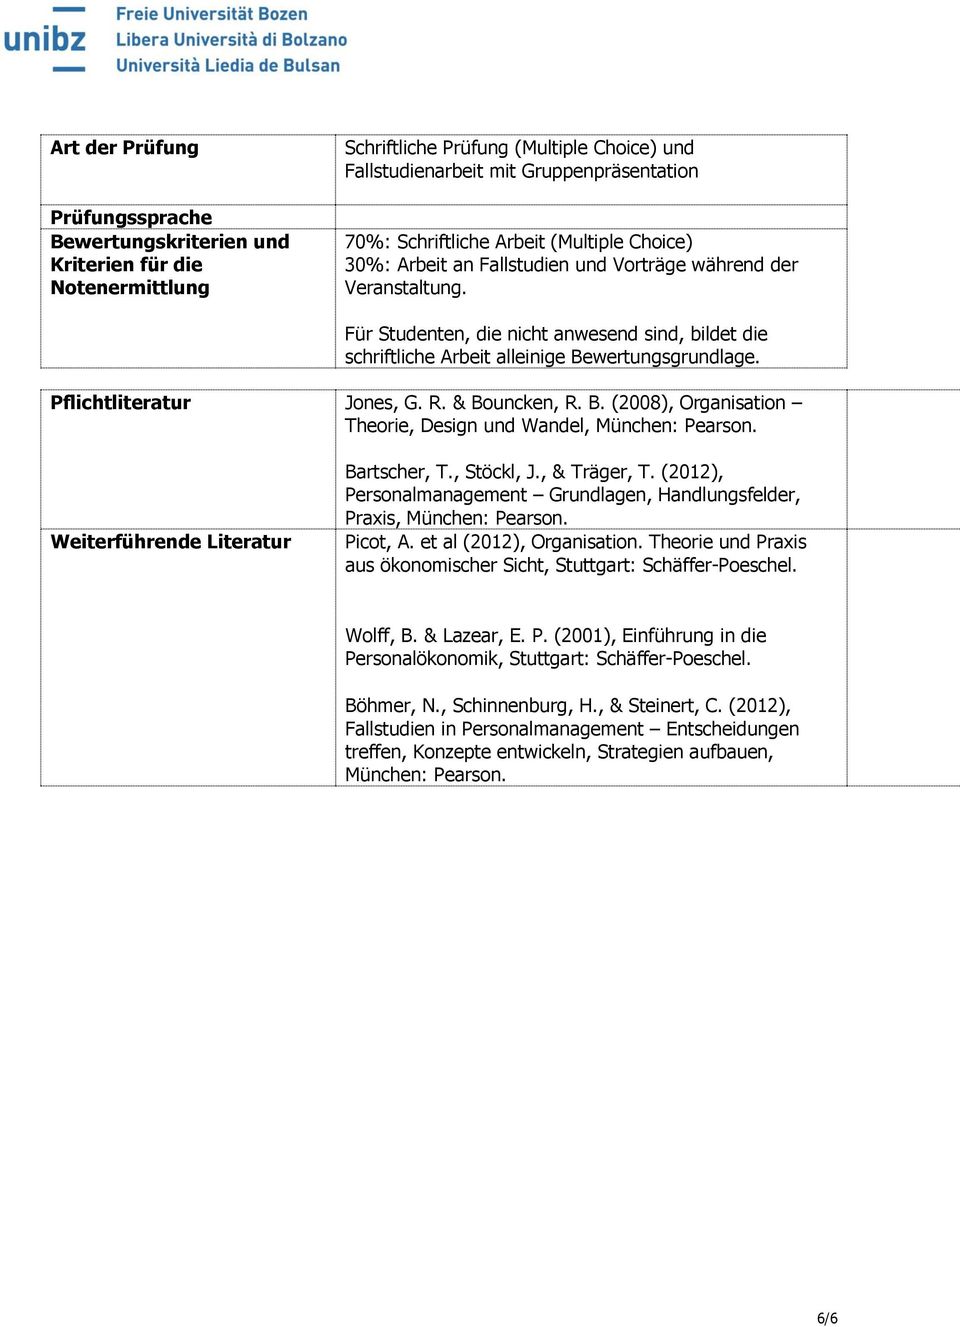 Pflichtliteratur Jones, G. R. & Bouncken, R. B. (2008), Organisation Theorie, Design und Wandel, München: Pearson. Weiterführende Literatur Bartscher, T., Stöckl, J., & Träger, T.